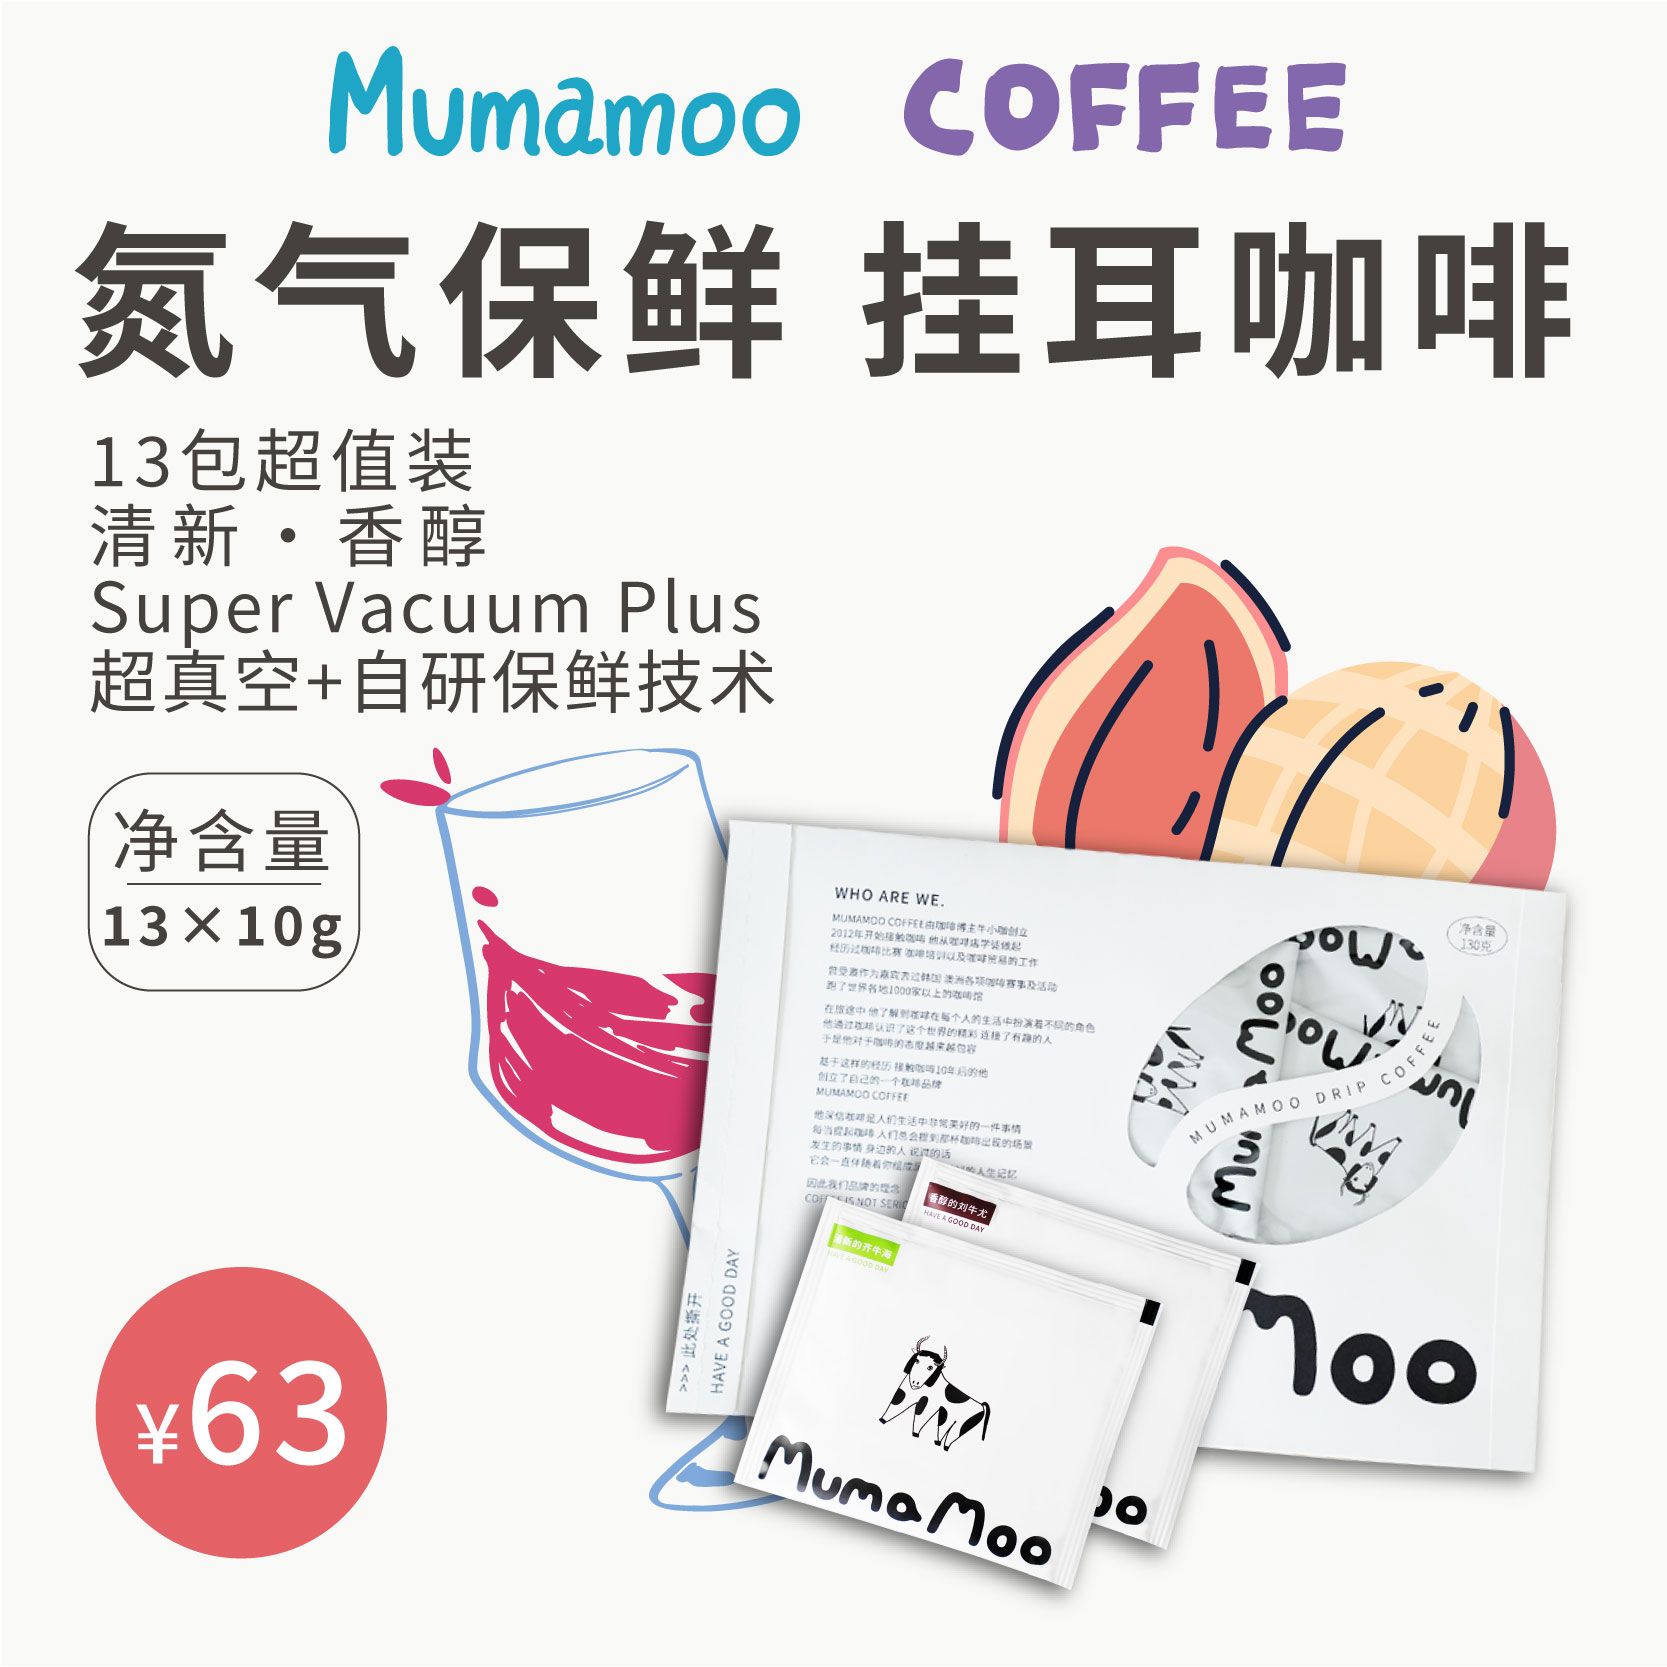 牛小咖MUMAMOO挂耳咖啡中深烘焙香醇中浅清新拼配咖啡粉13片X10克